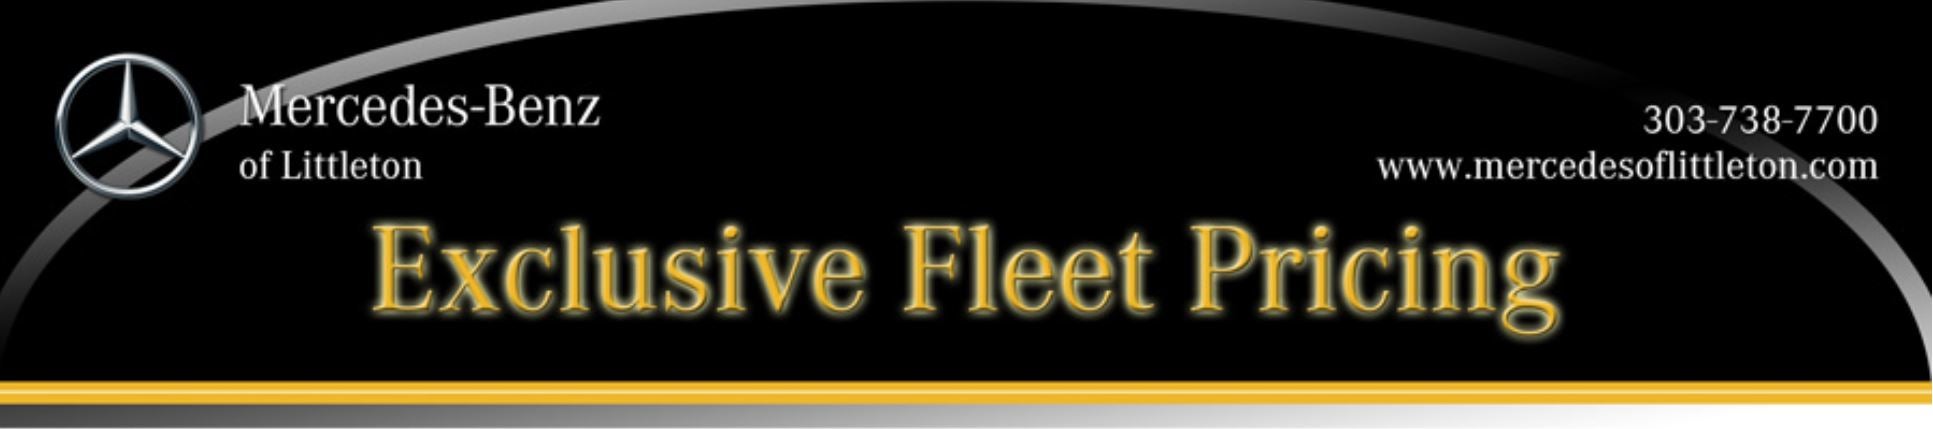 Header - Exclusive Fleet Pricing